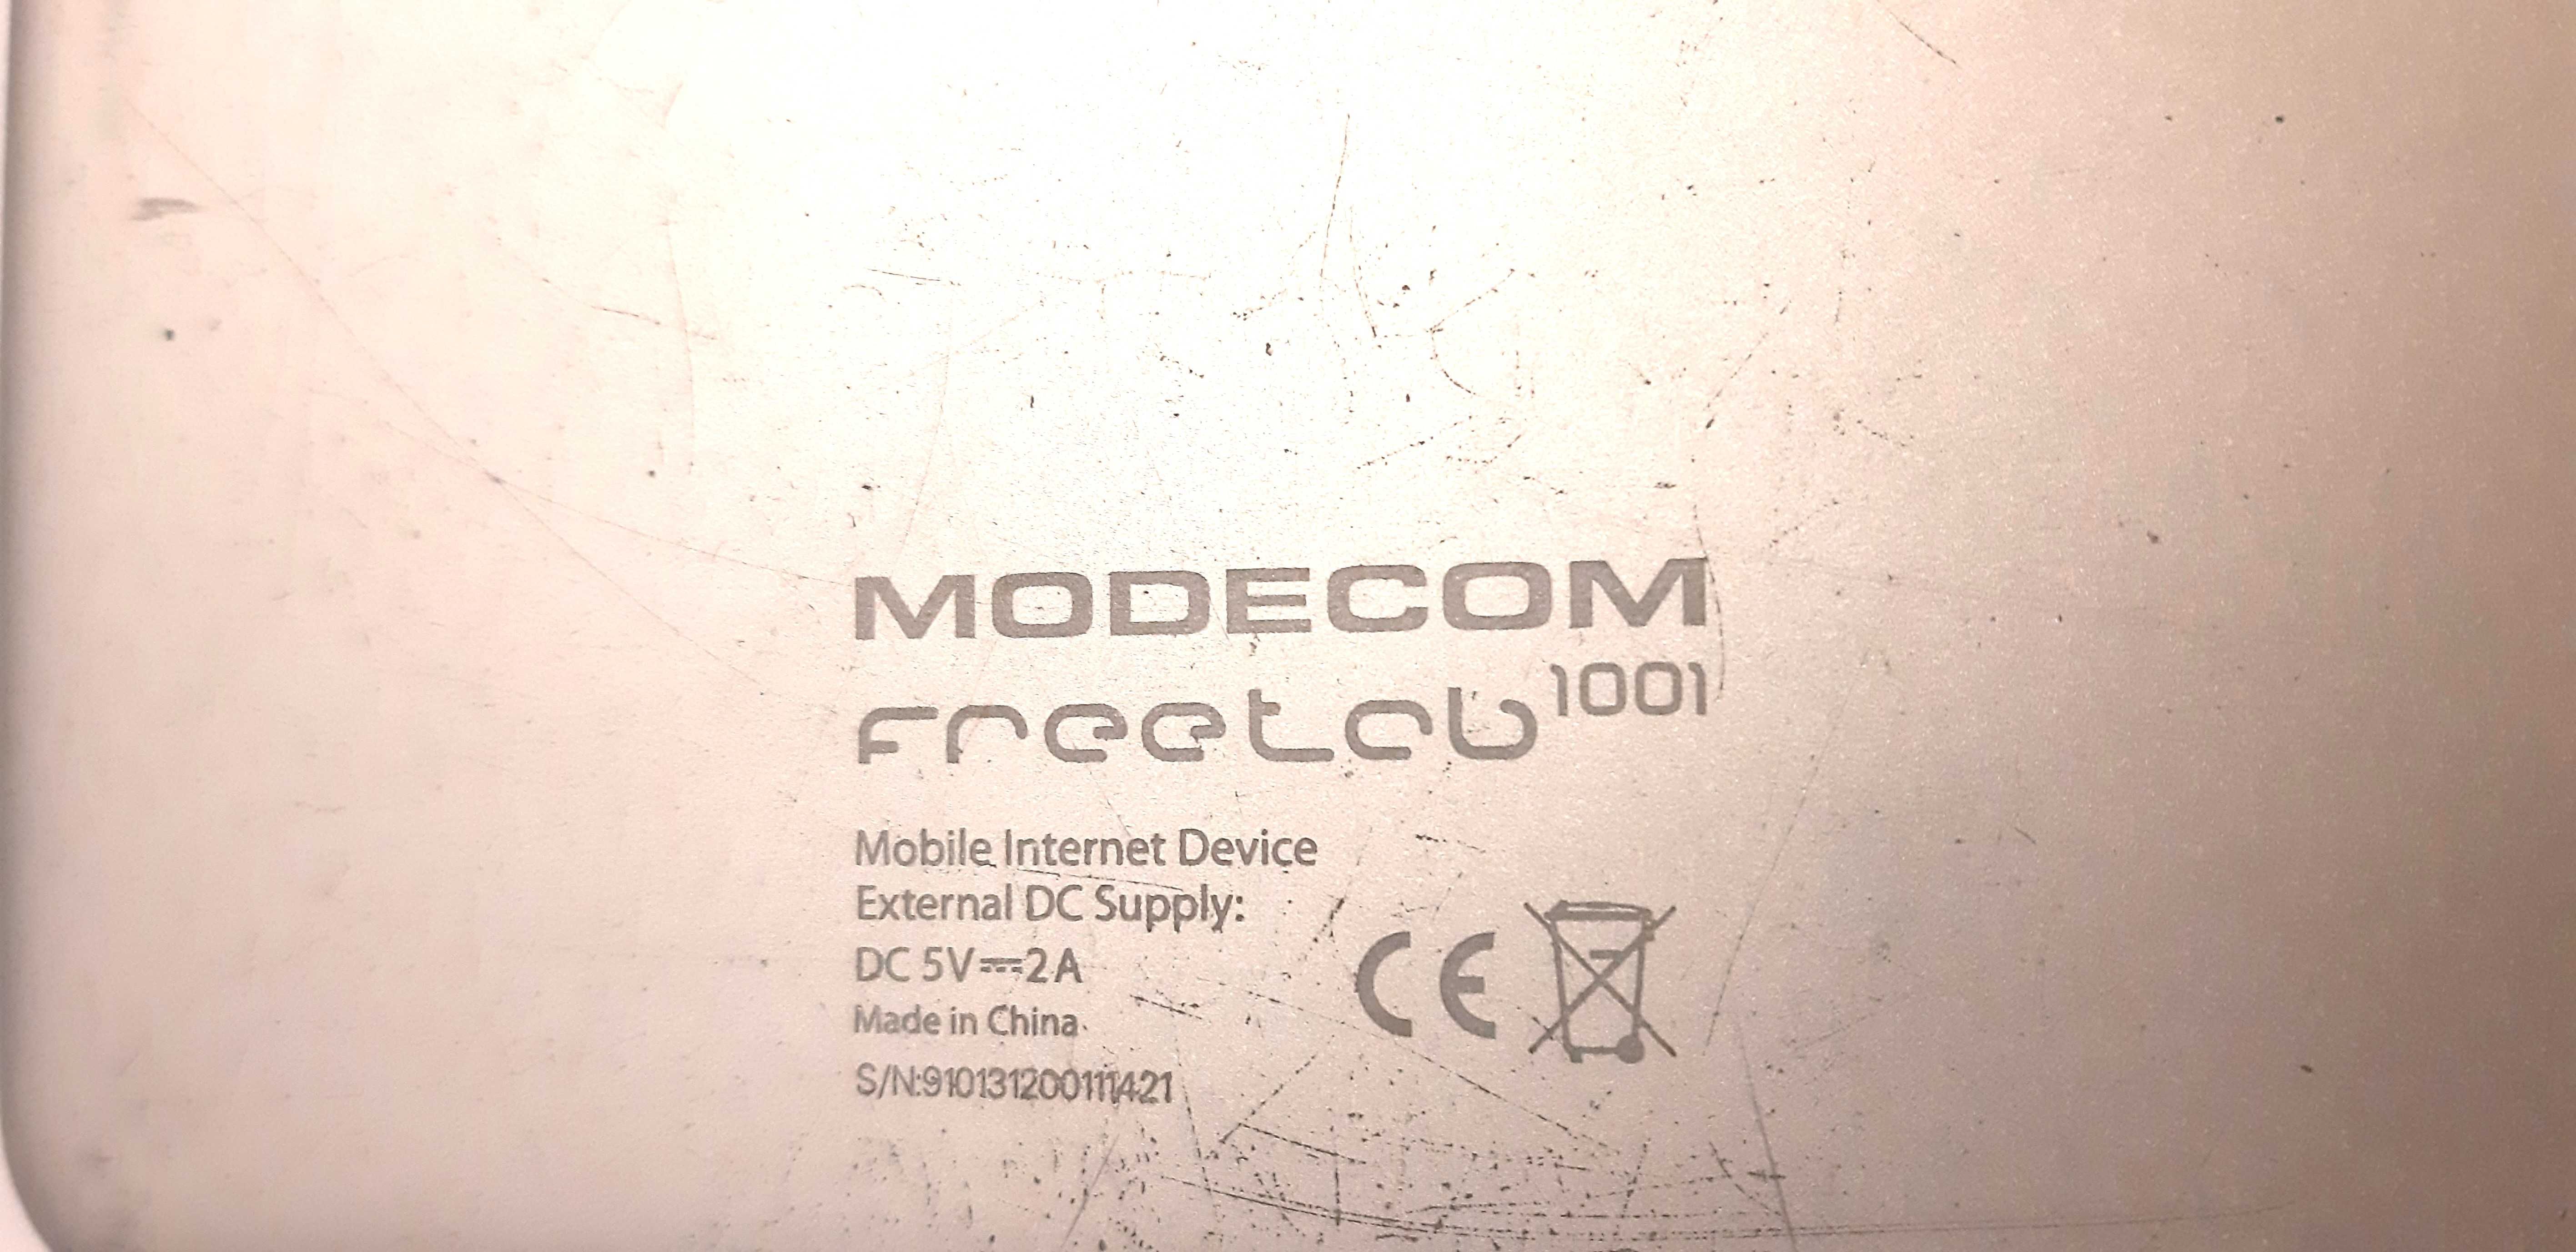 Tablet Modecom Freetab 1001